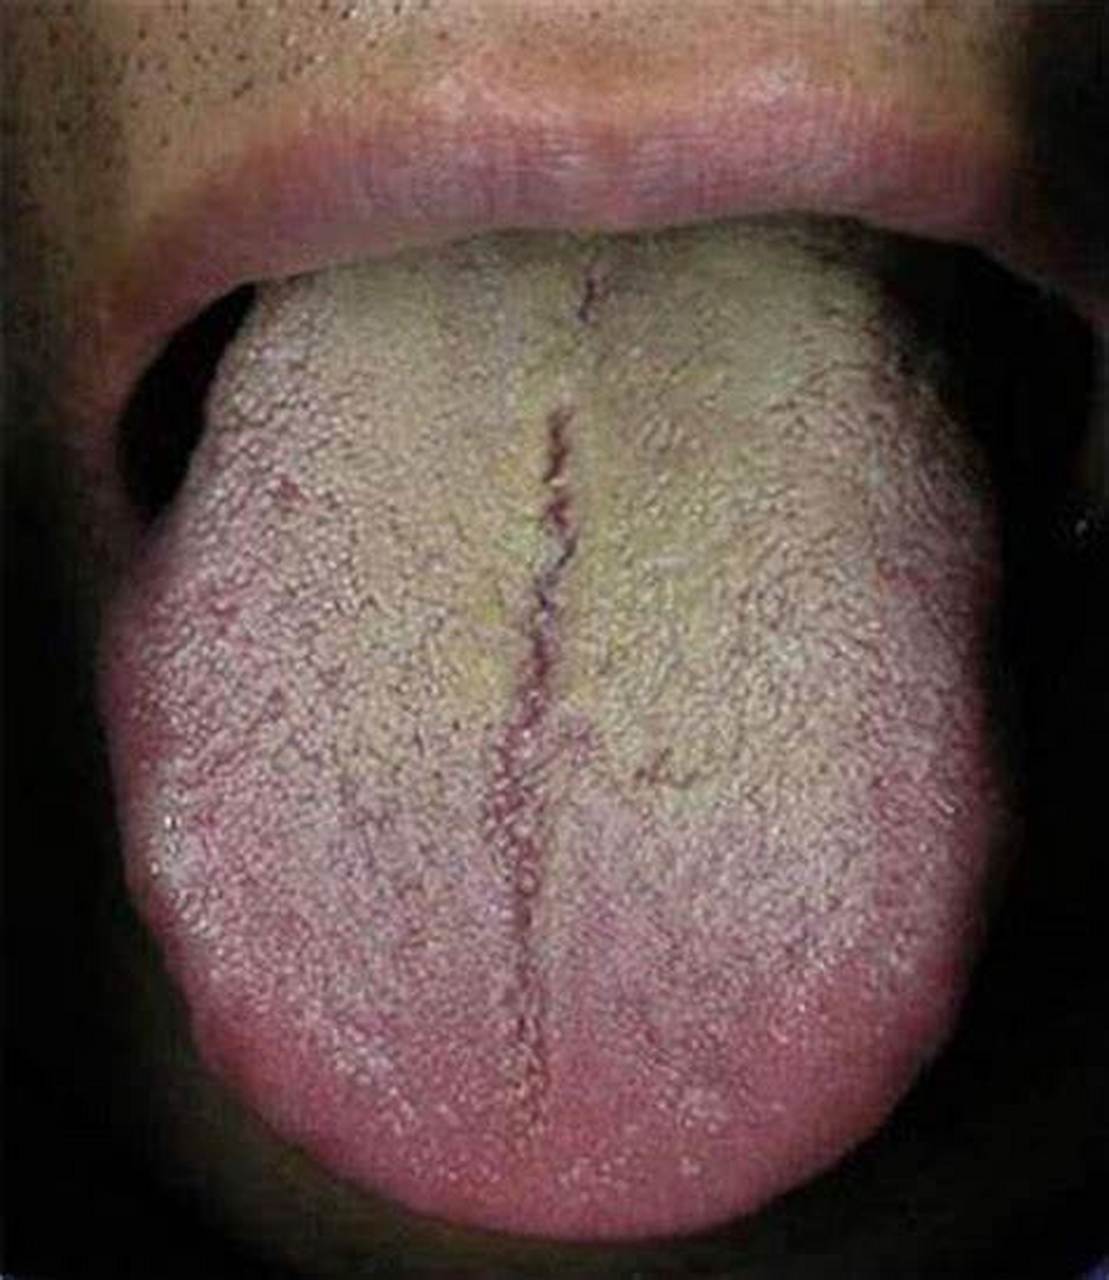 如何看待我们的舌头来区分脏腑,我来教给大家:  第一,舌头的前面,舌尖